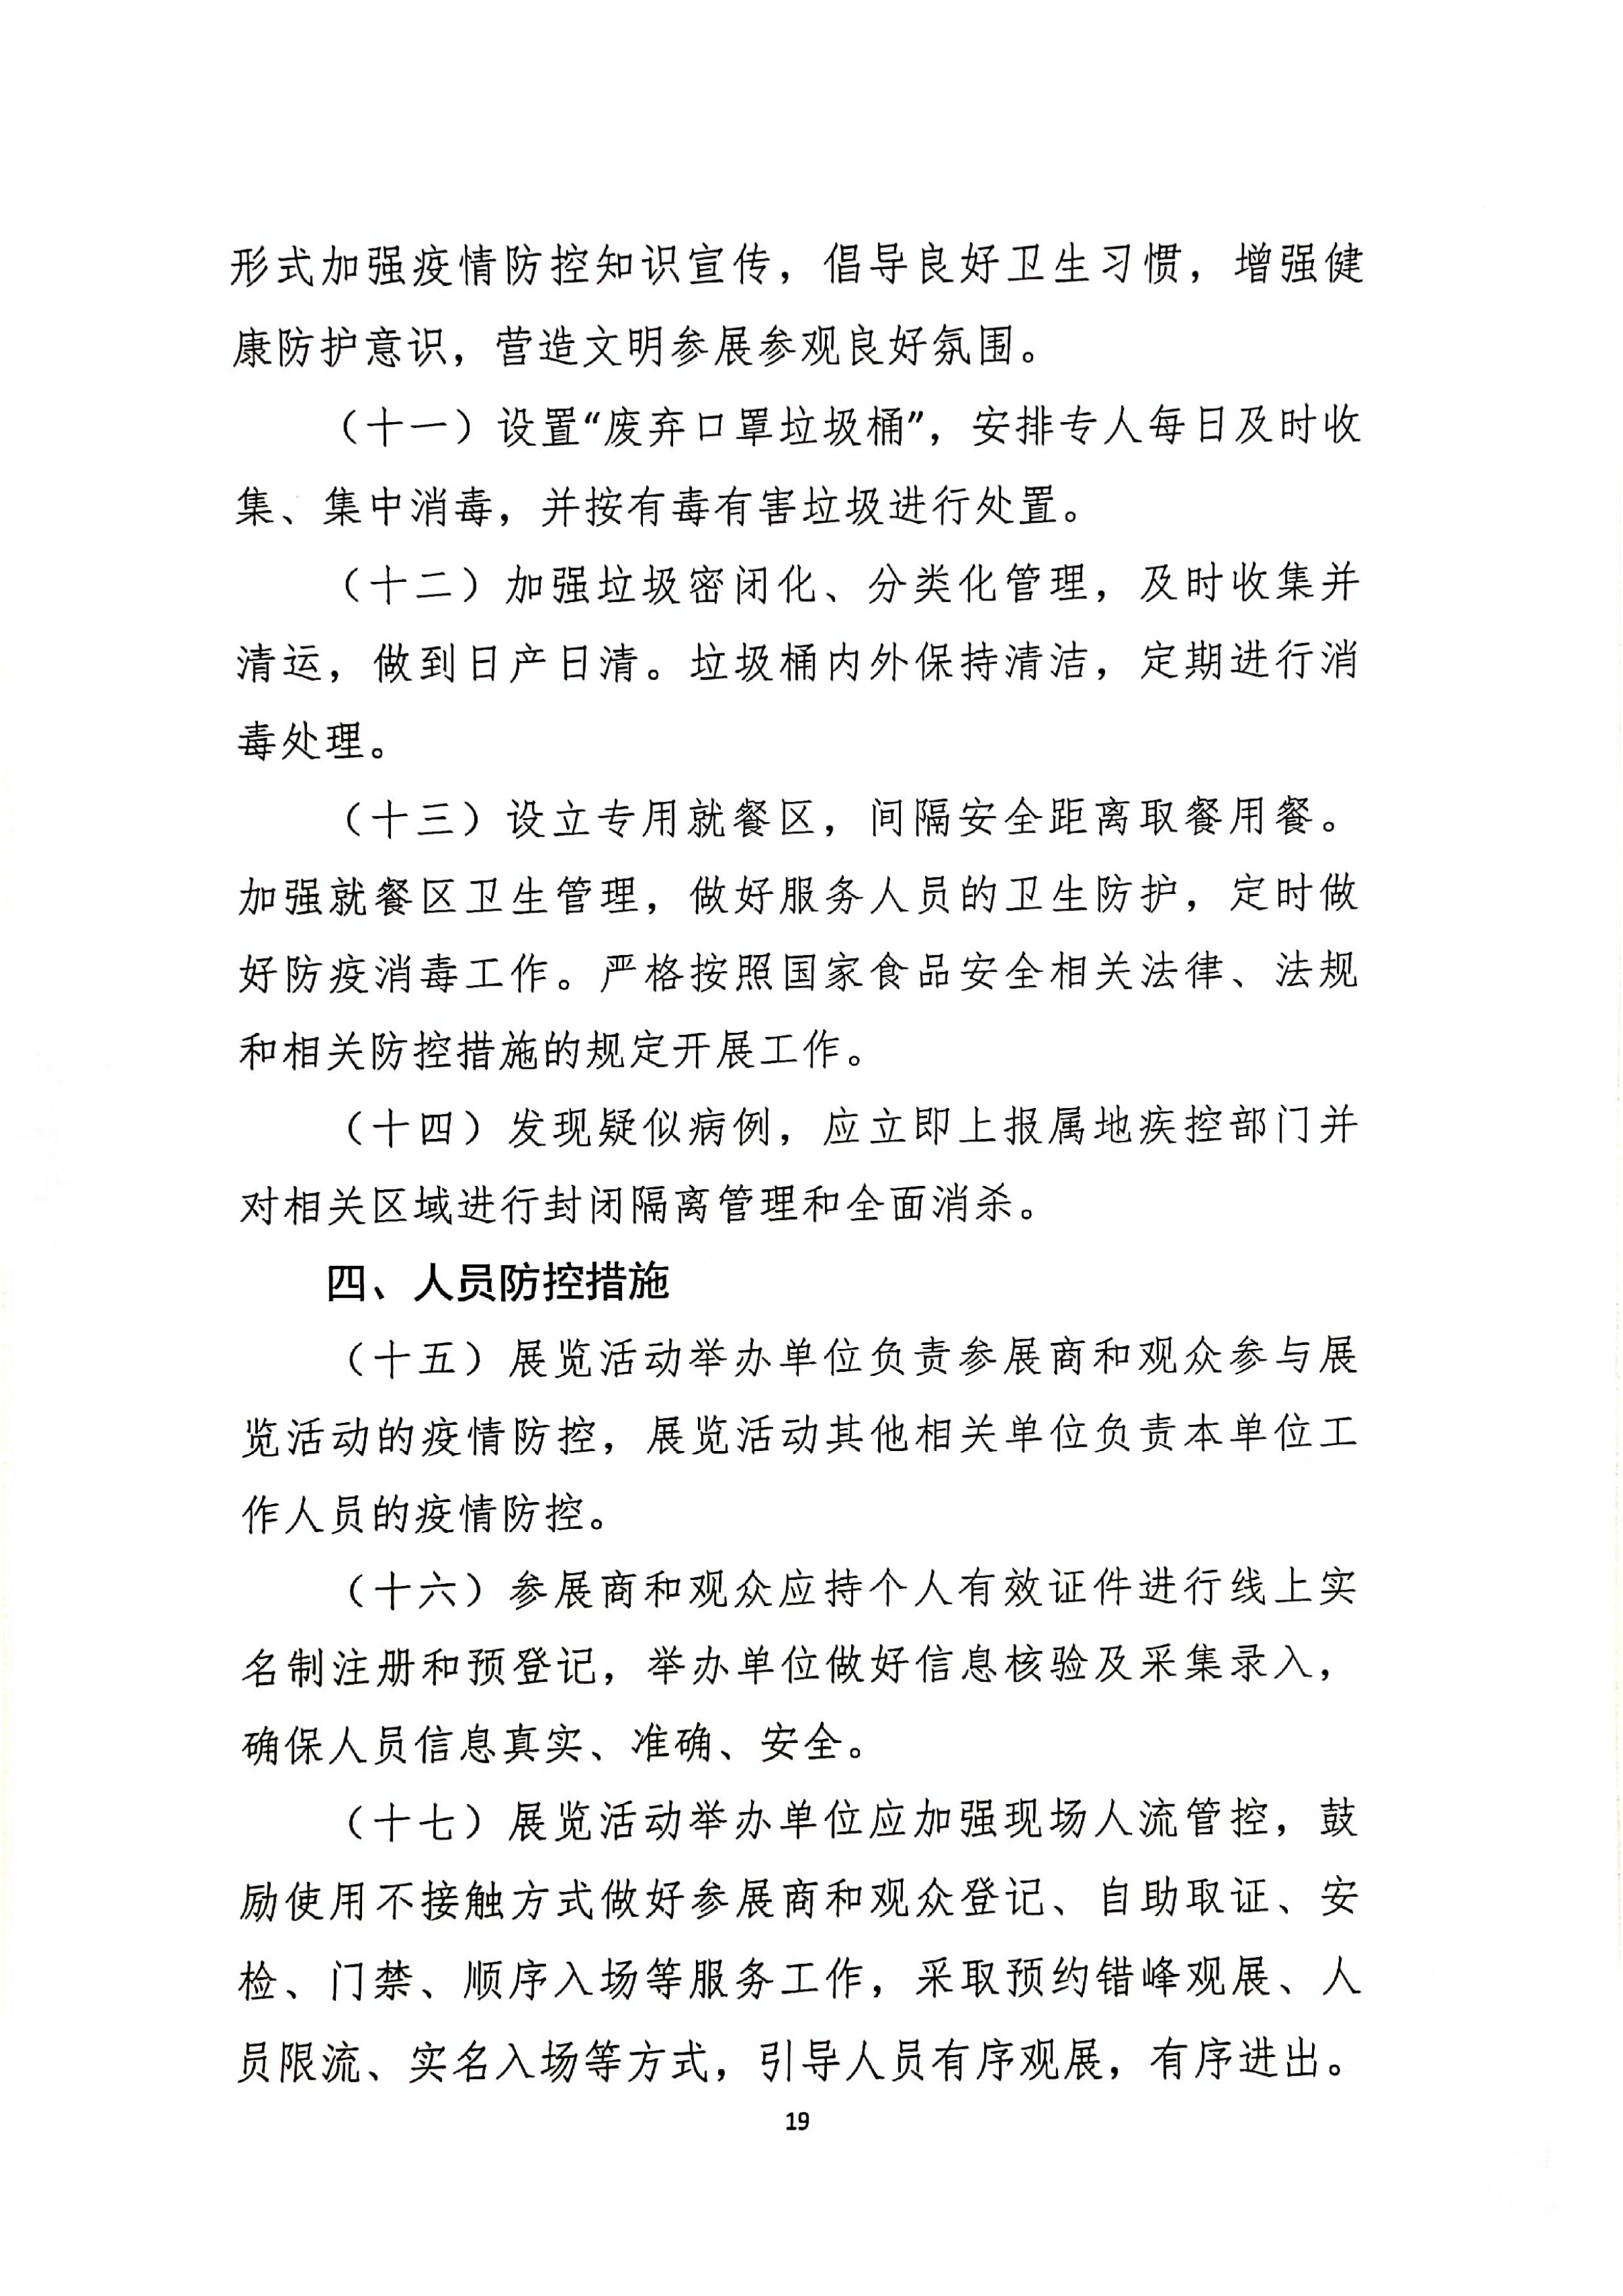 发文4号-关于印发《上海市商场、超市疫情防控技术指南》等4个指南的通知_19.jpg